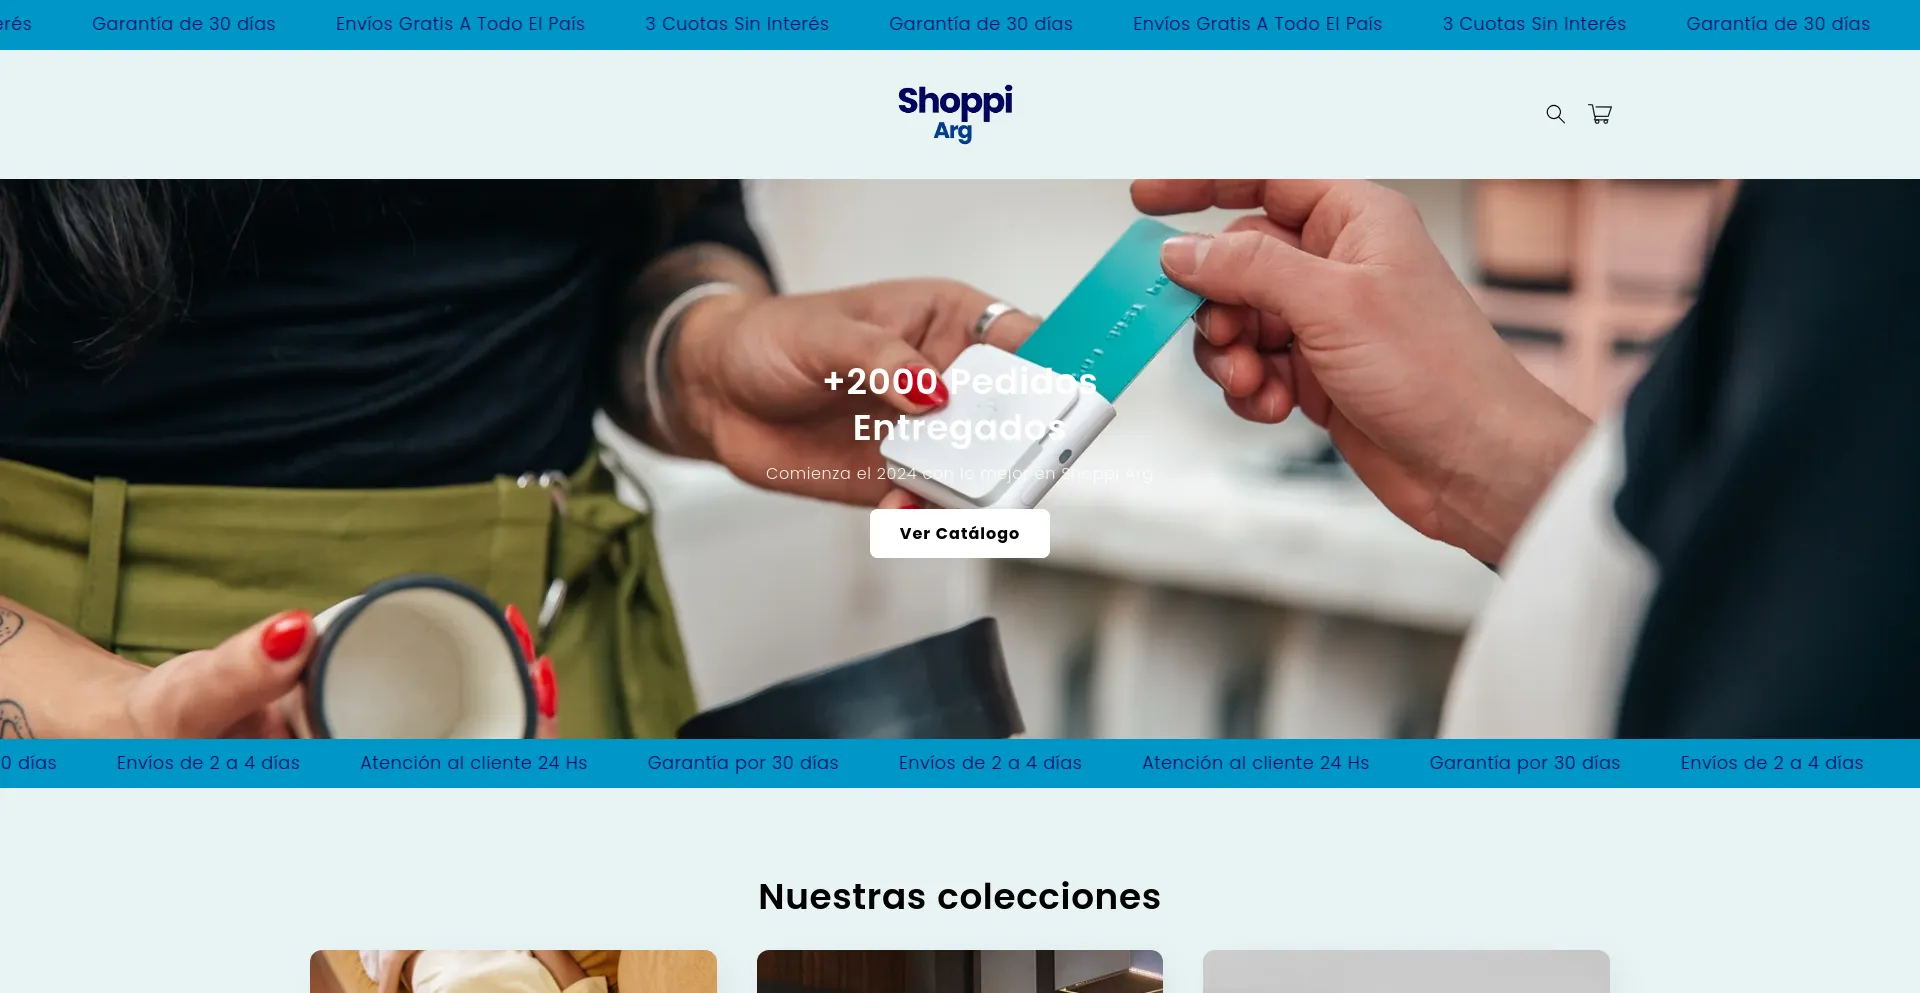 Shoppiarg.com